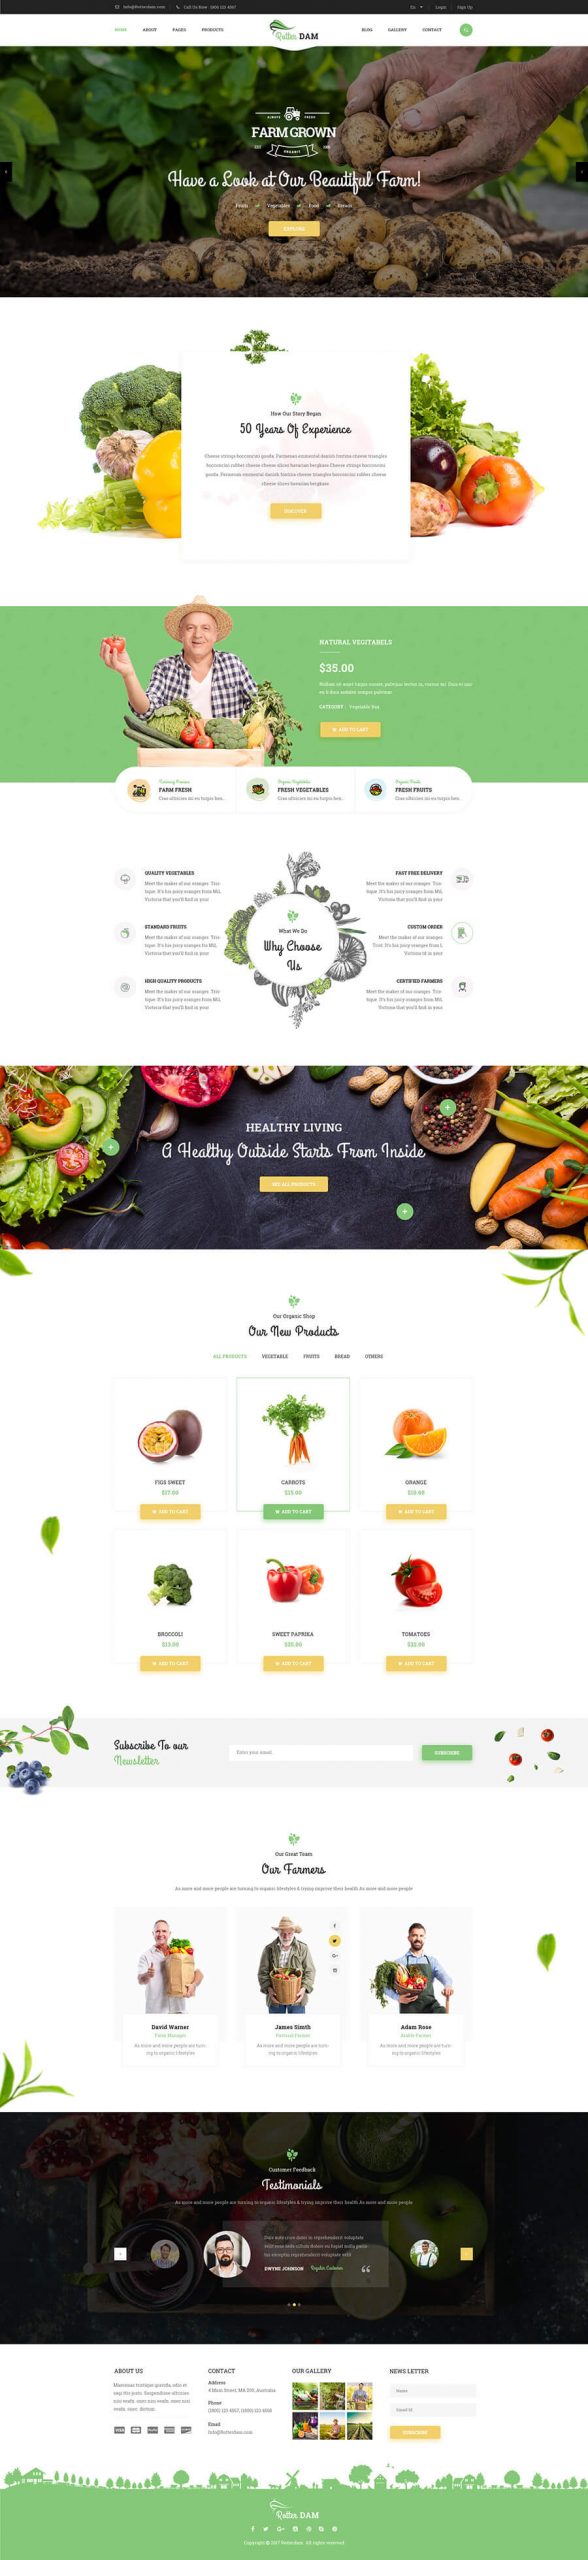 thiết kế website xuất khẩu nông sản, thiết kế website bán trái cây, website bán nông sản chuyên nghiệp